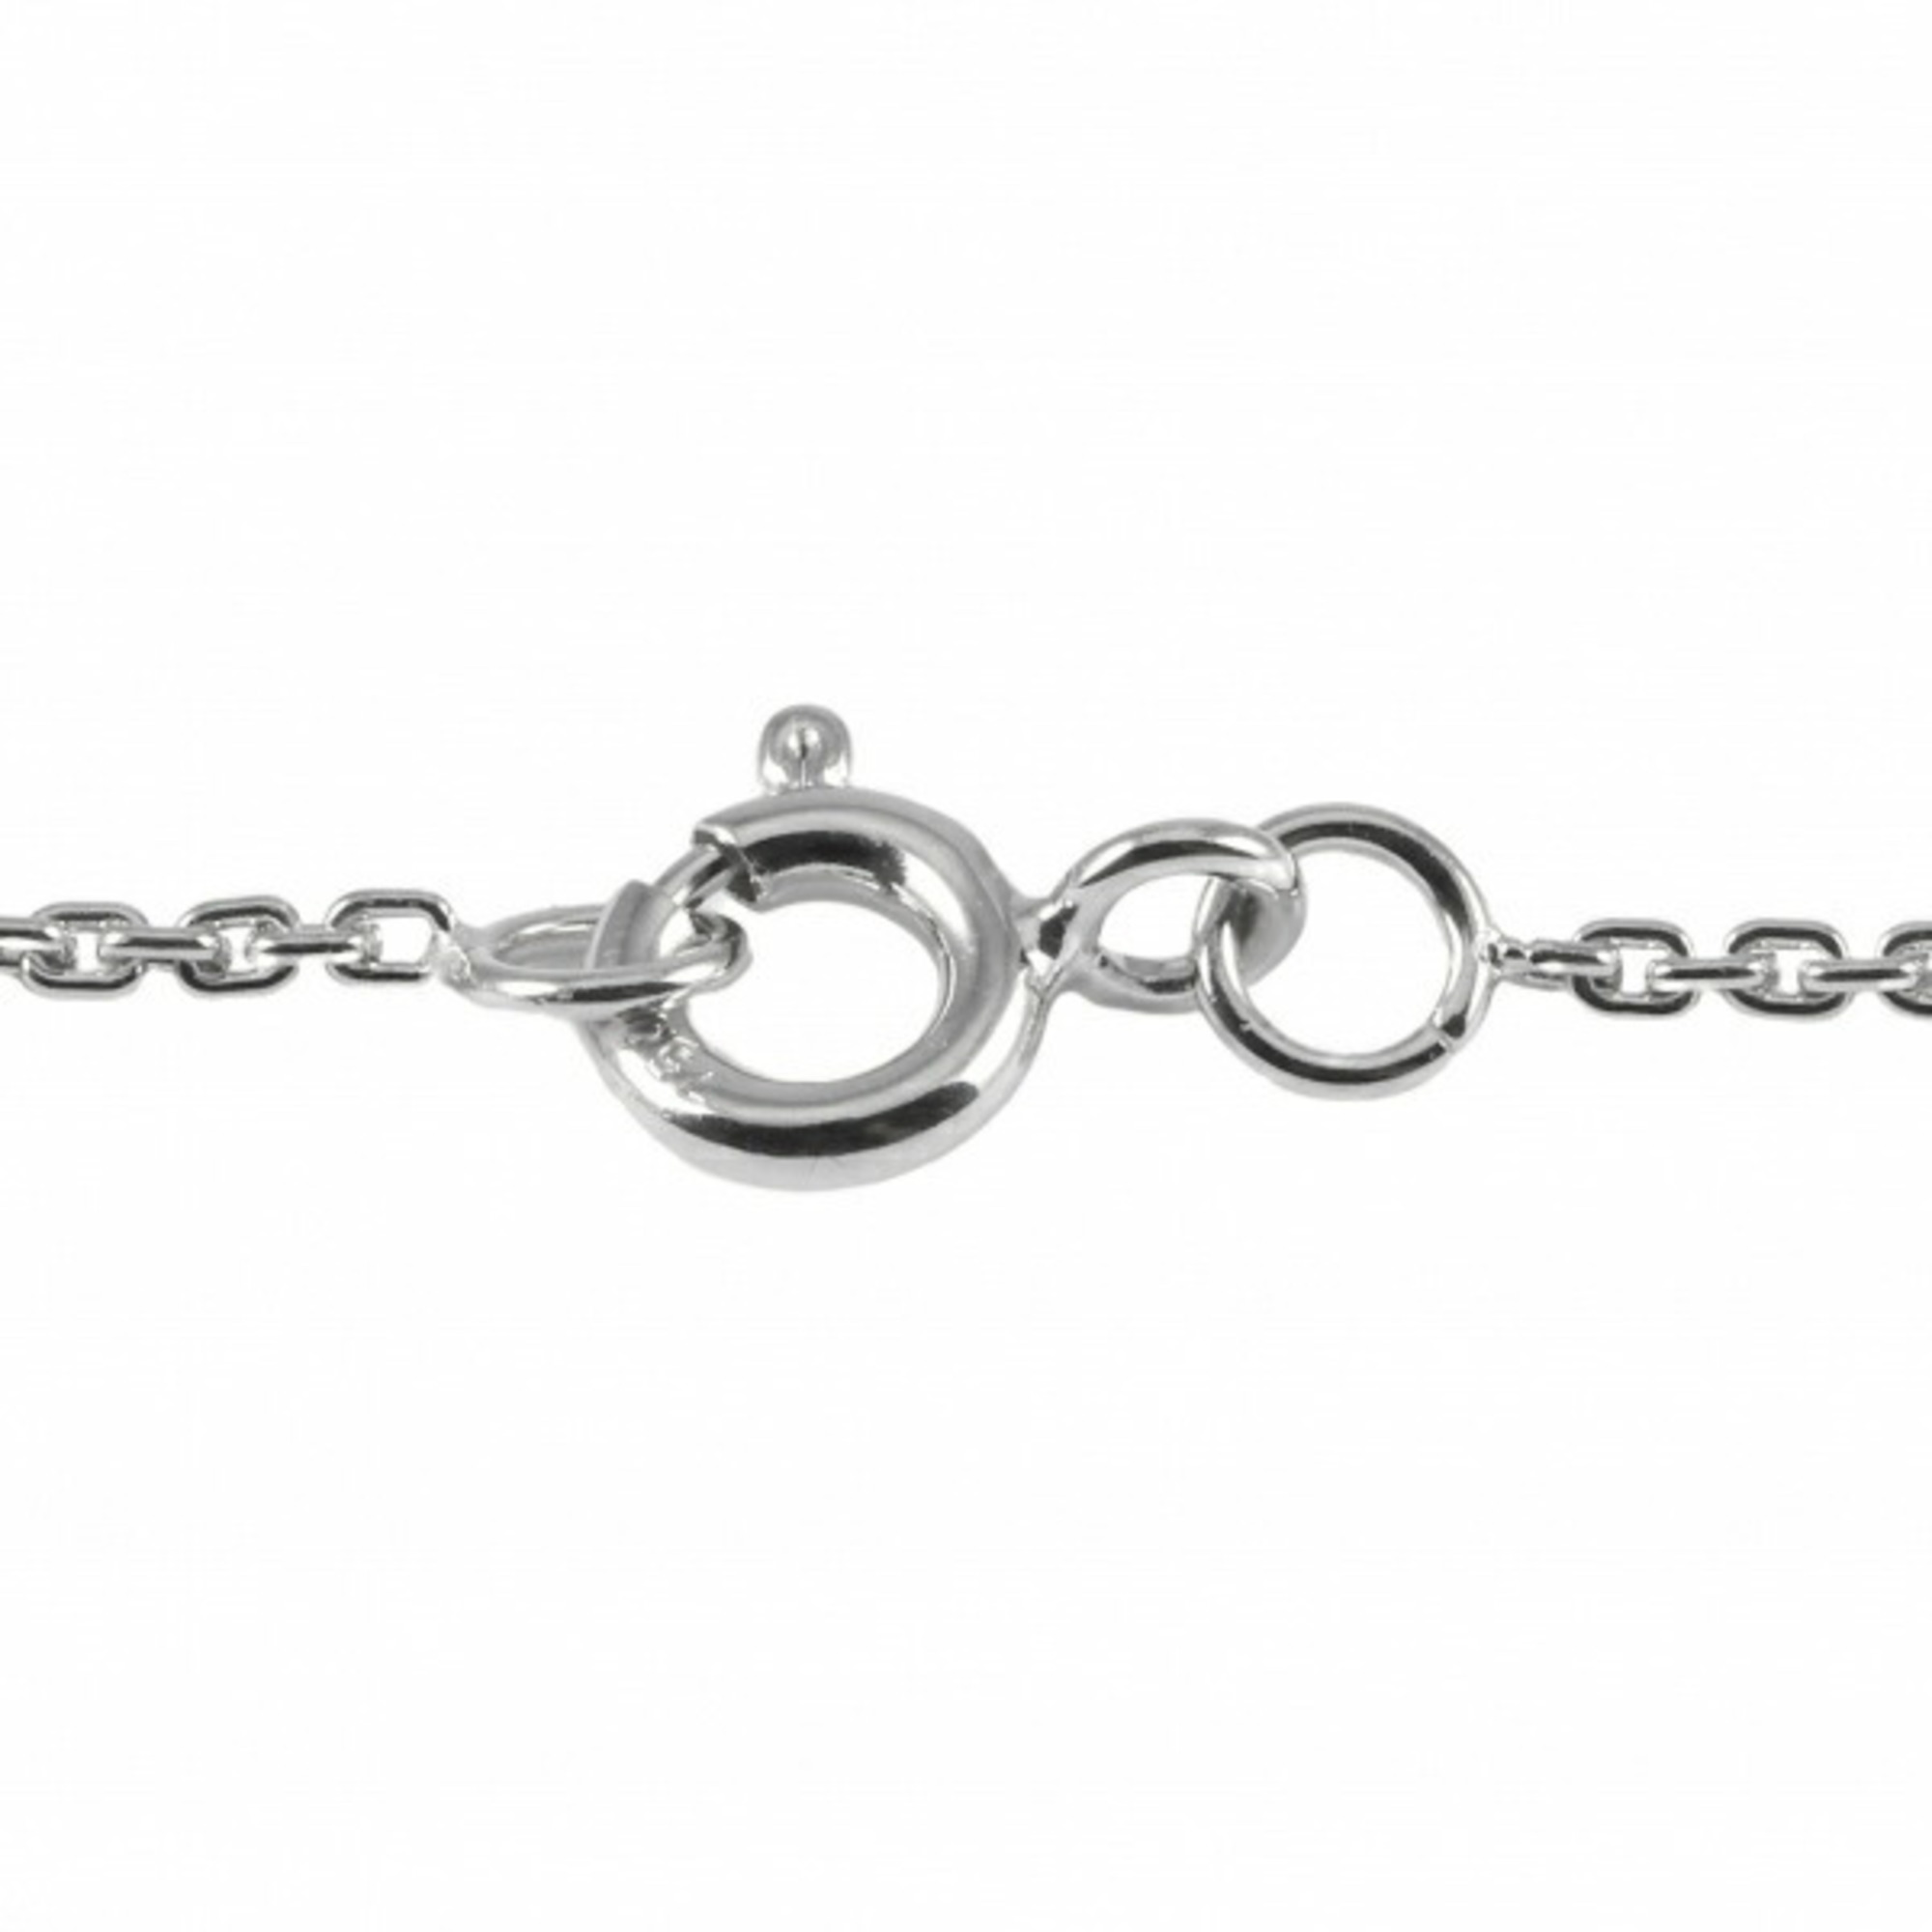 Louis Vuitton Pandantif Vault One PM Necklace/Pendant K18WG White Gold